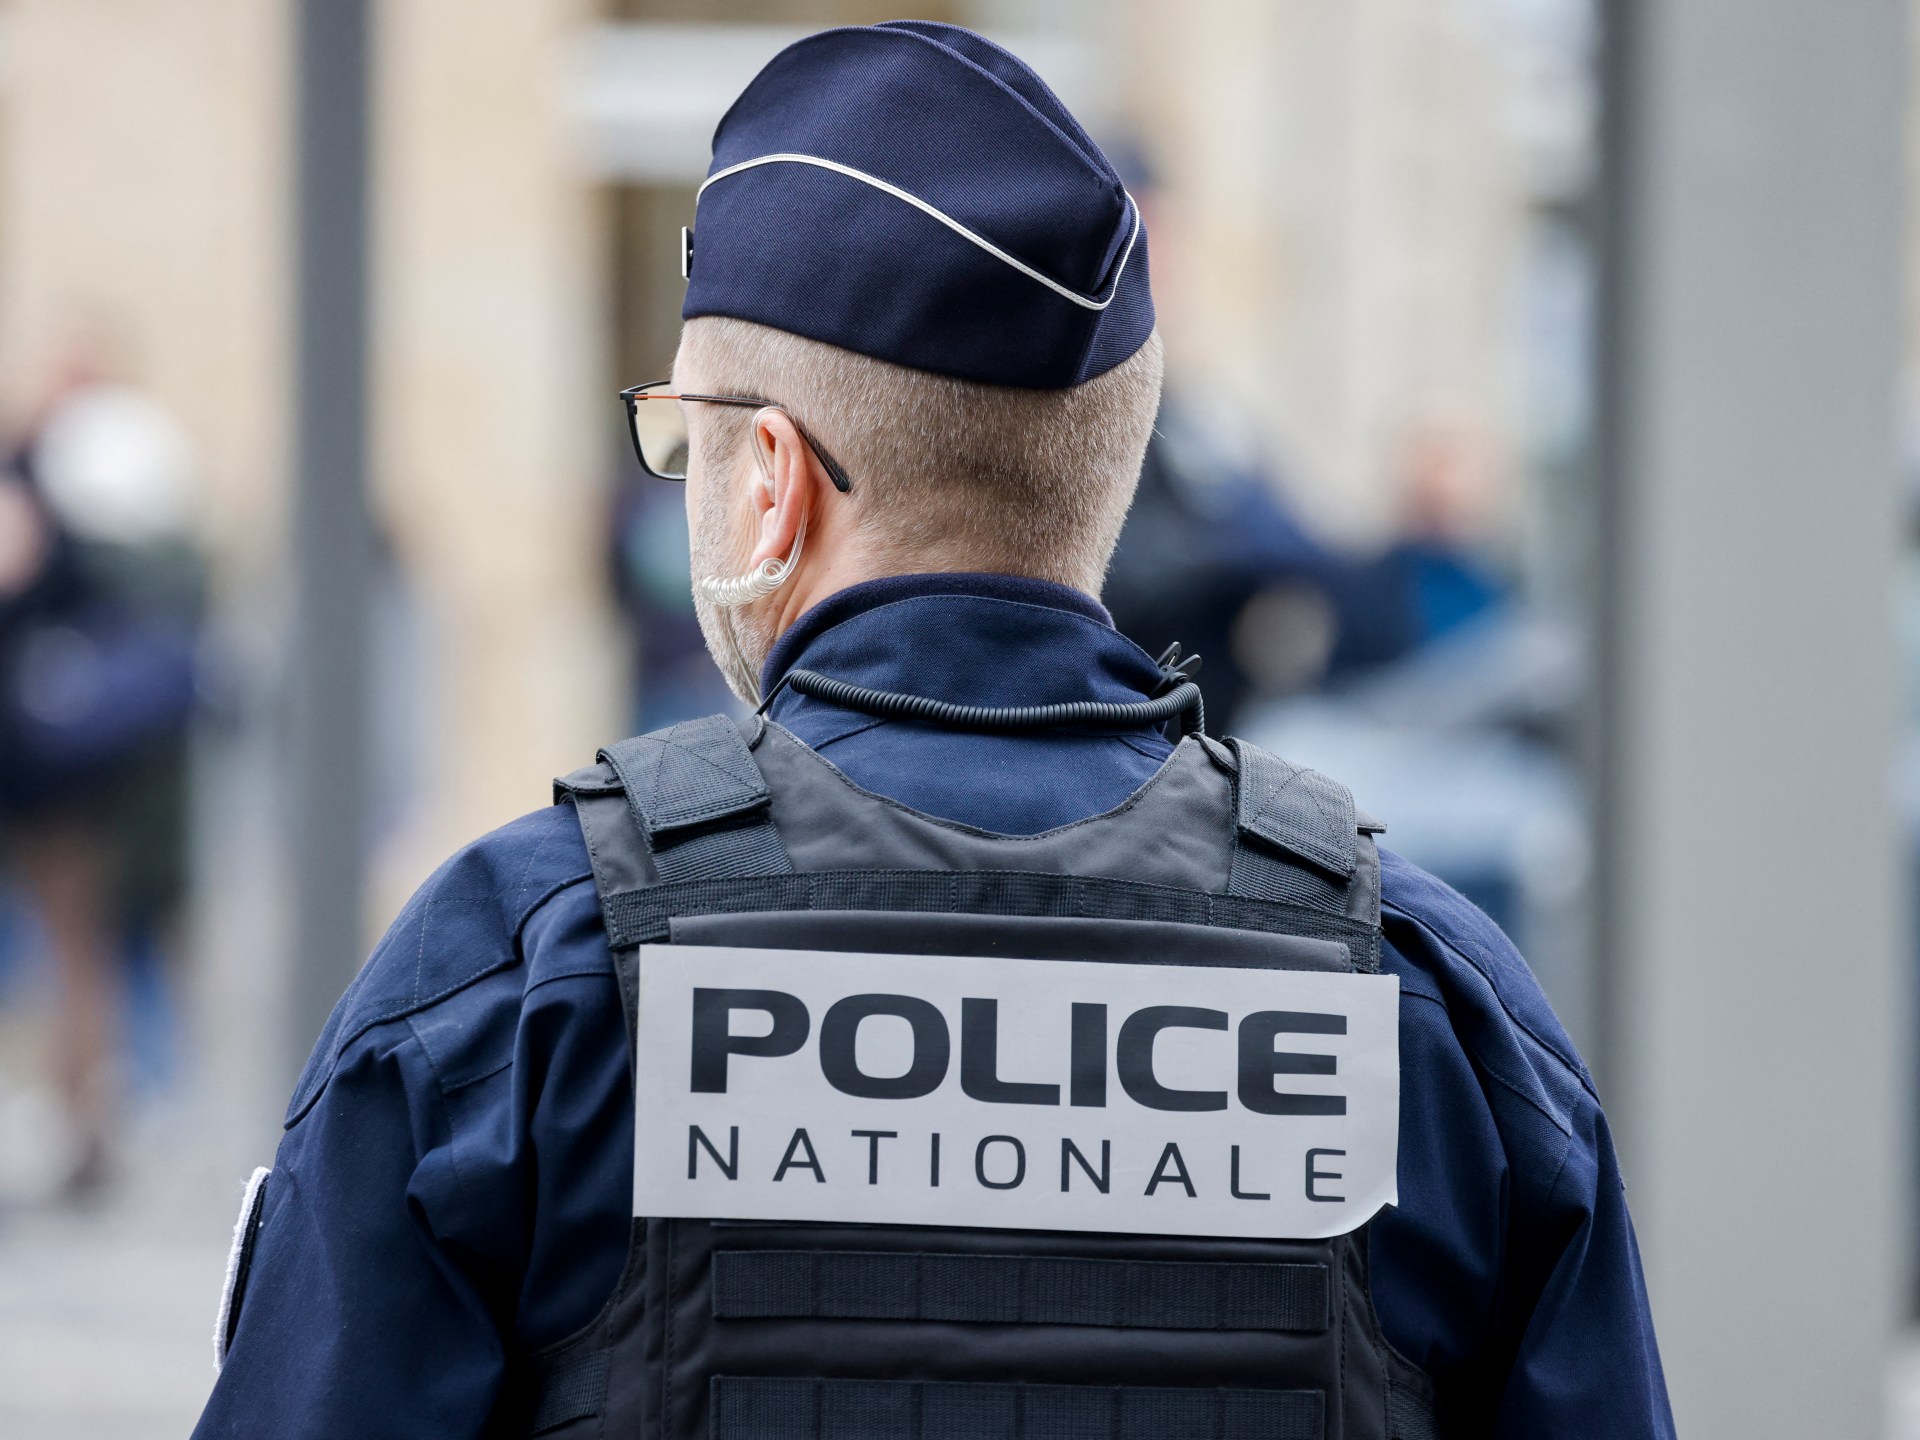 لوموند: رسائل لشرطة فرنسا على واتساب تكشف انتهاكات وتثير القلق | أخبار سياسة – البوكس نيوز